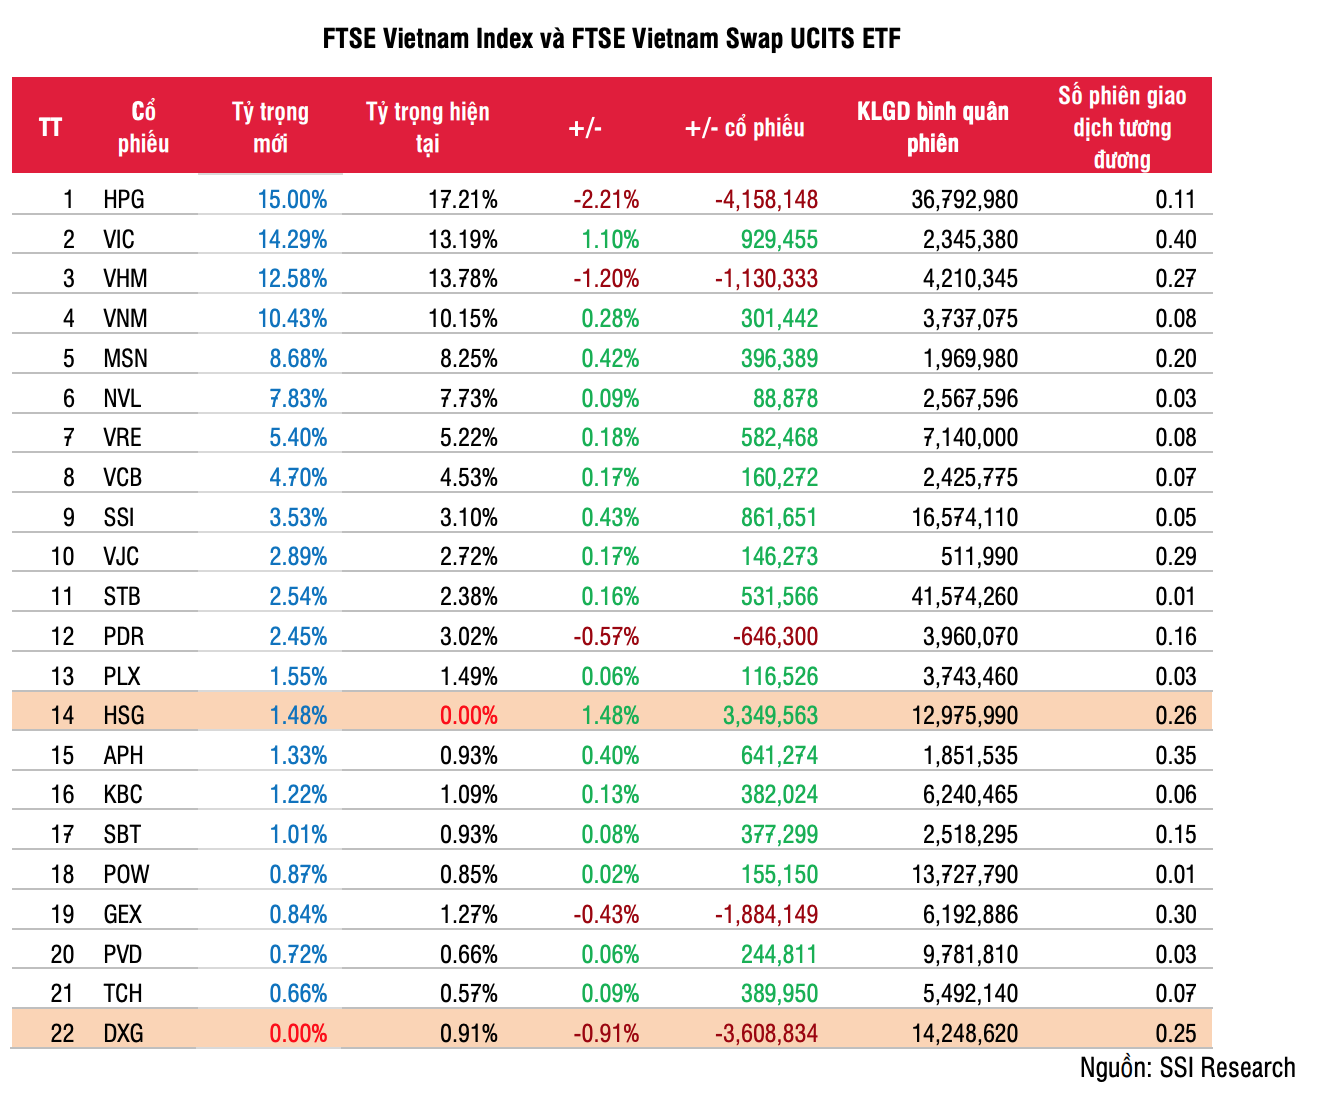 Các mã chứng khoán trong danh mục FTSE Vietnam Index và FTSE Vietnam Swap UCITS ETF. Nguồn SSI Research